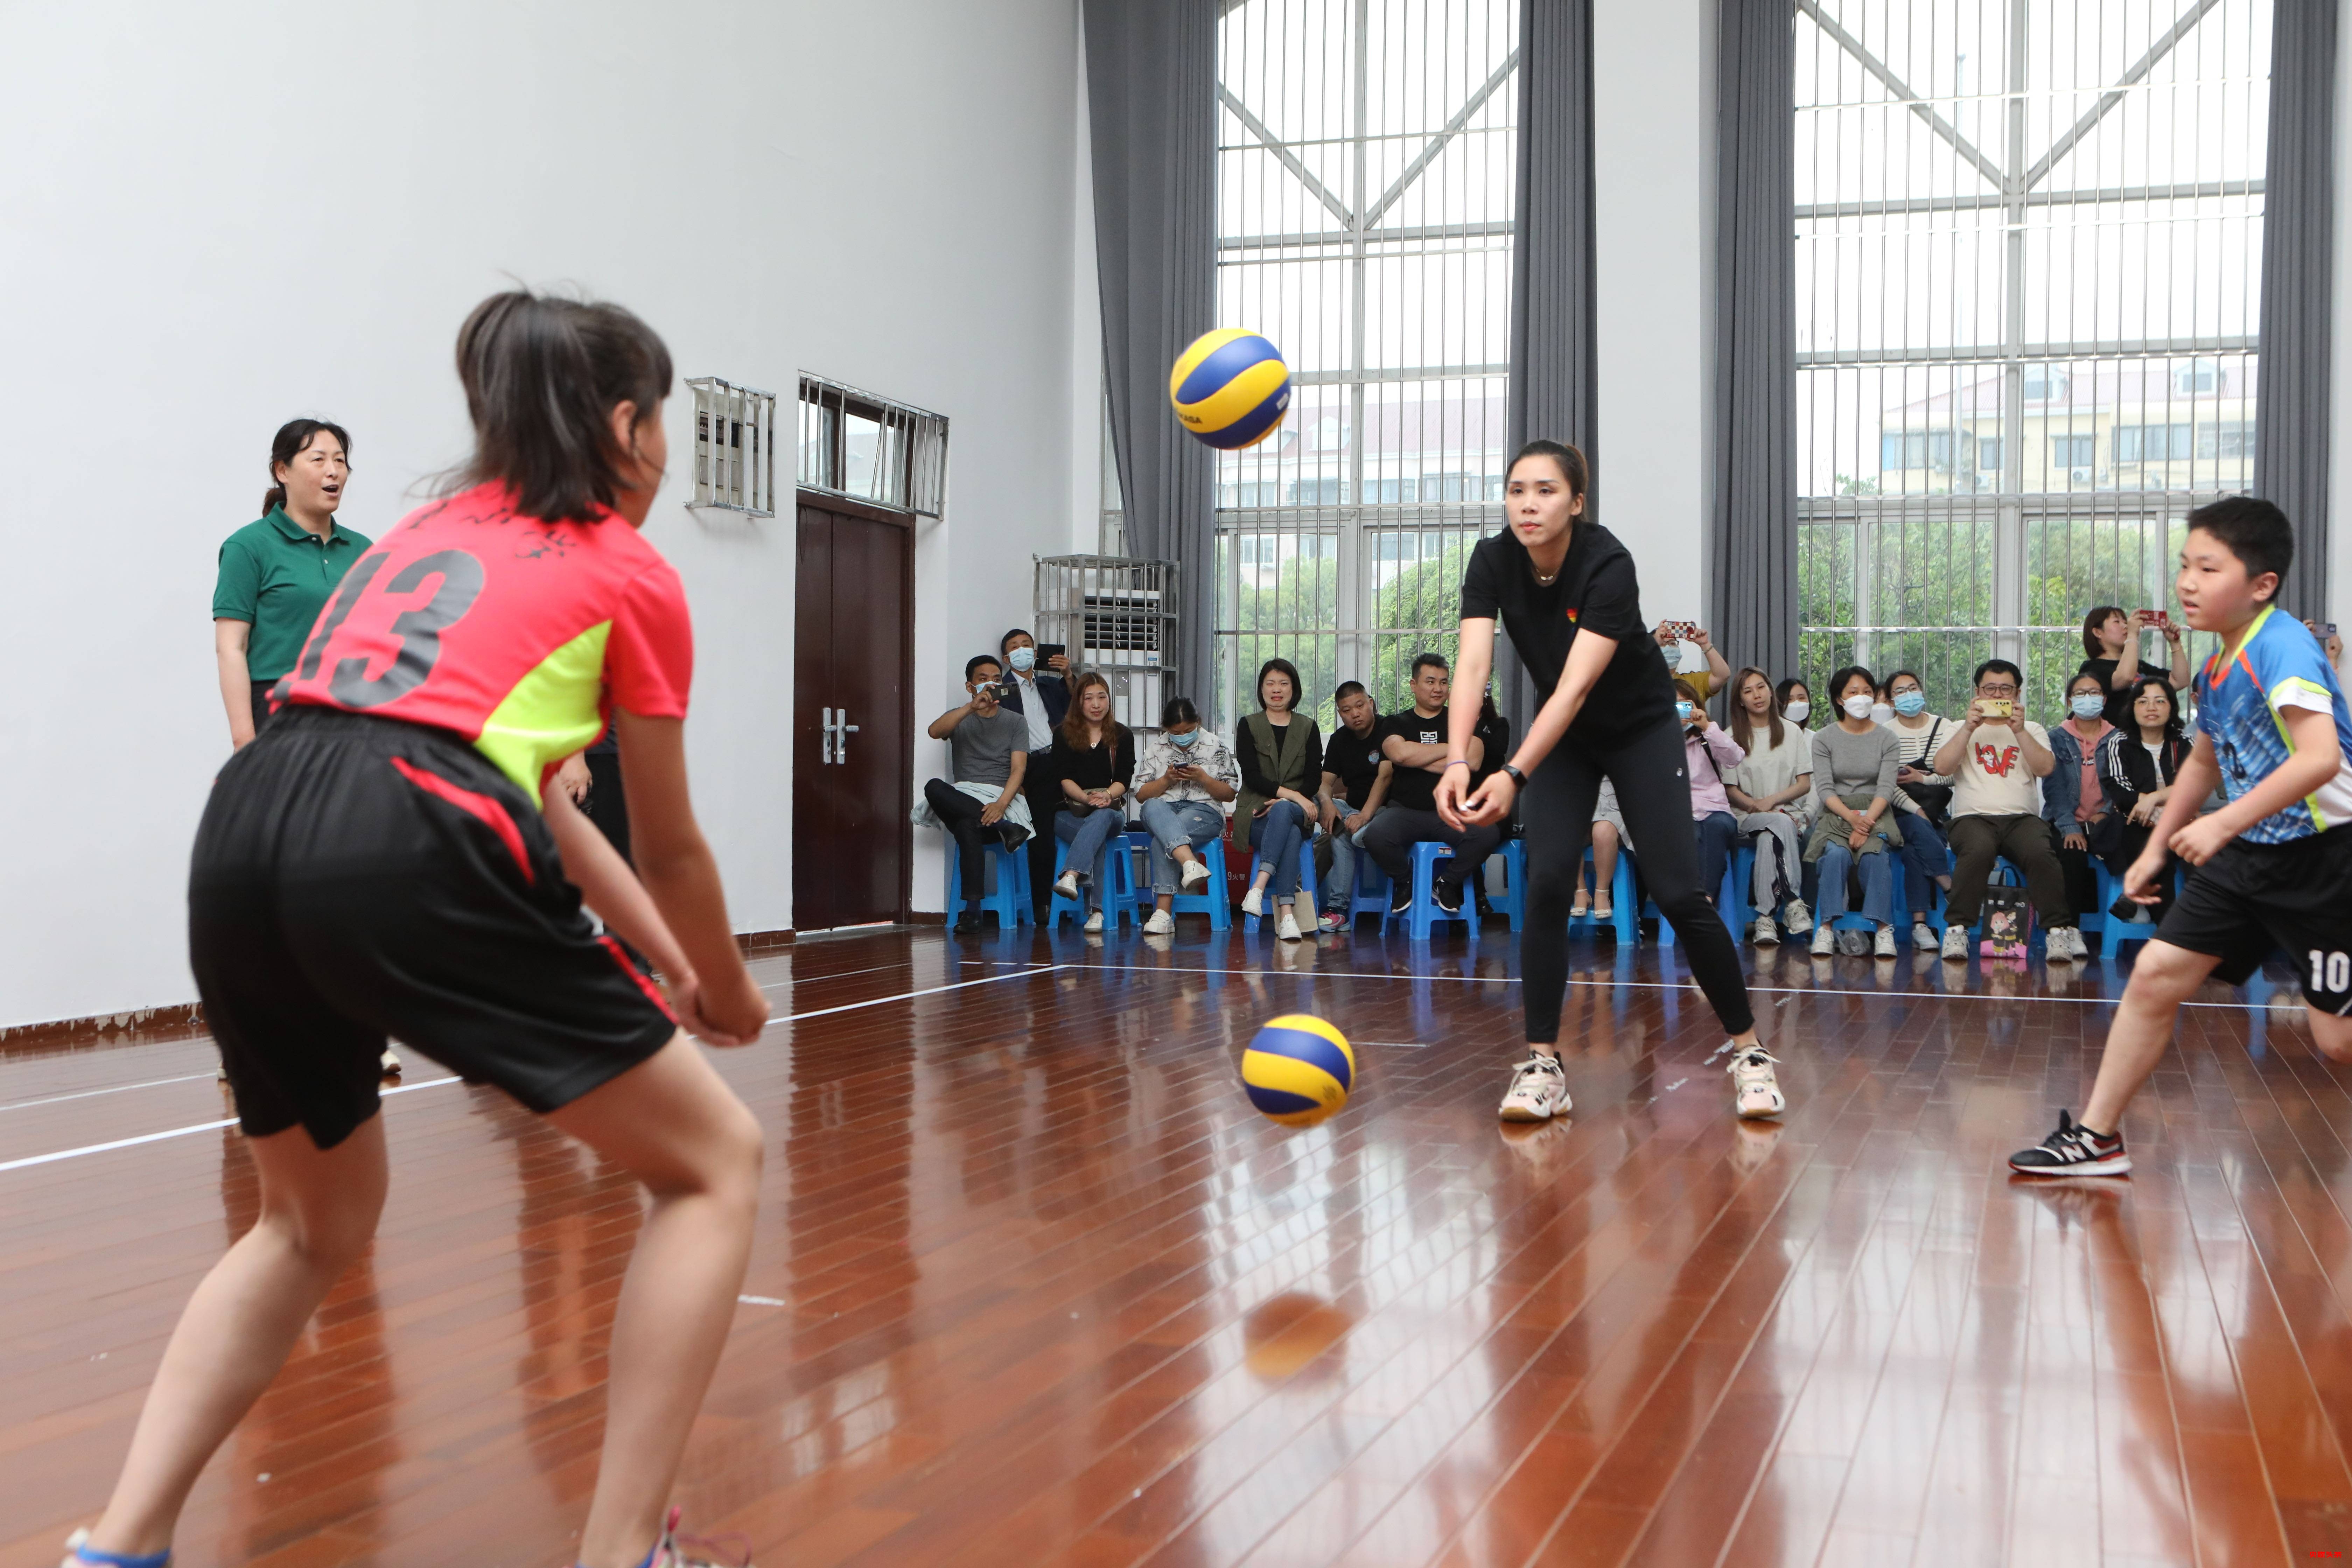 第五届上海市民排球节开幕式暨排球进校园活动 喜迎四名形象大使